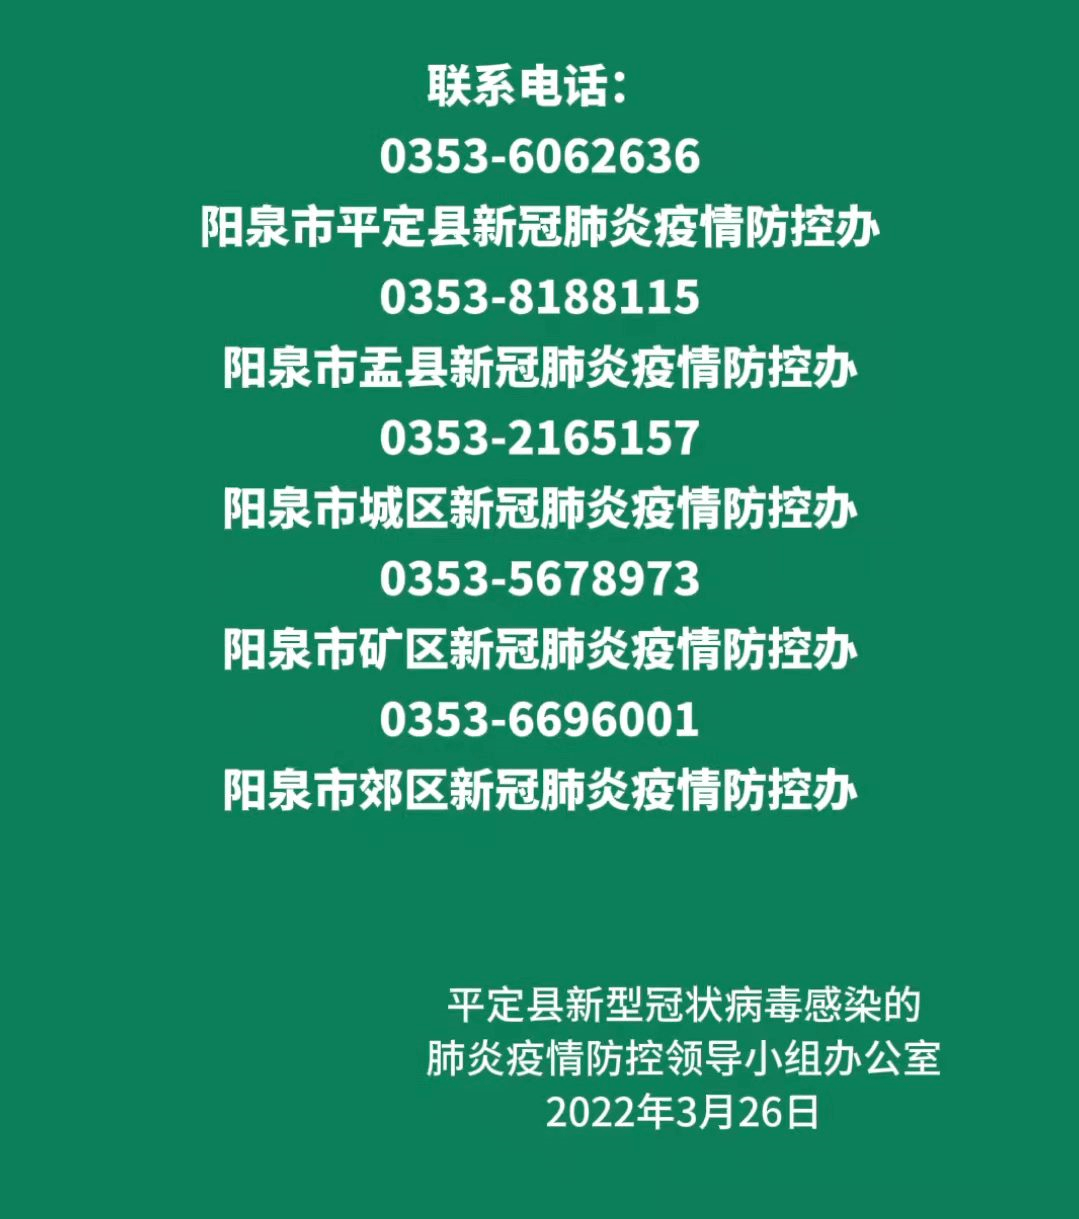 本土新增12285658临汾朔州阳泉三地密接者轨迹行程通报山西省疾控中心